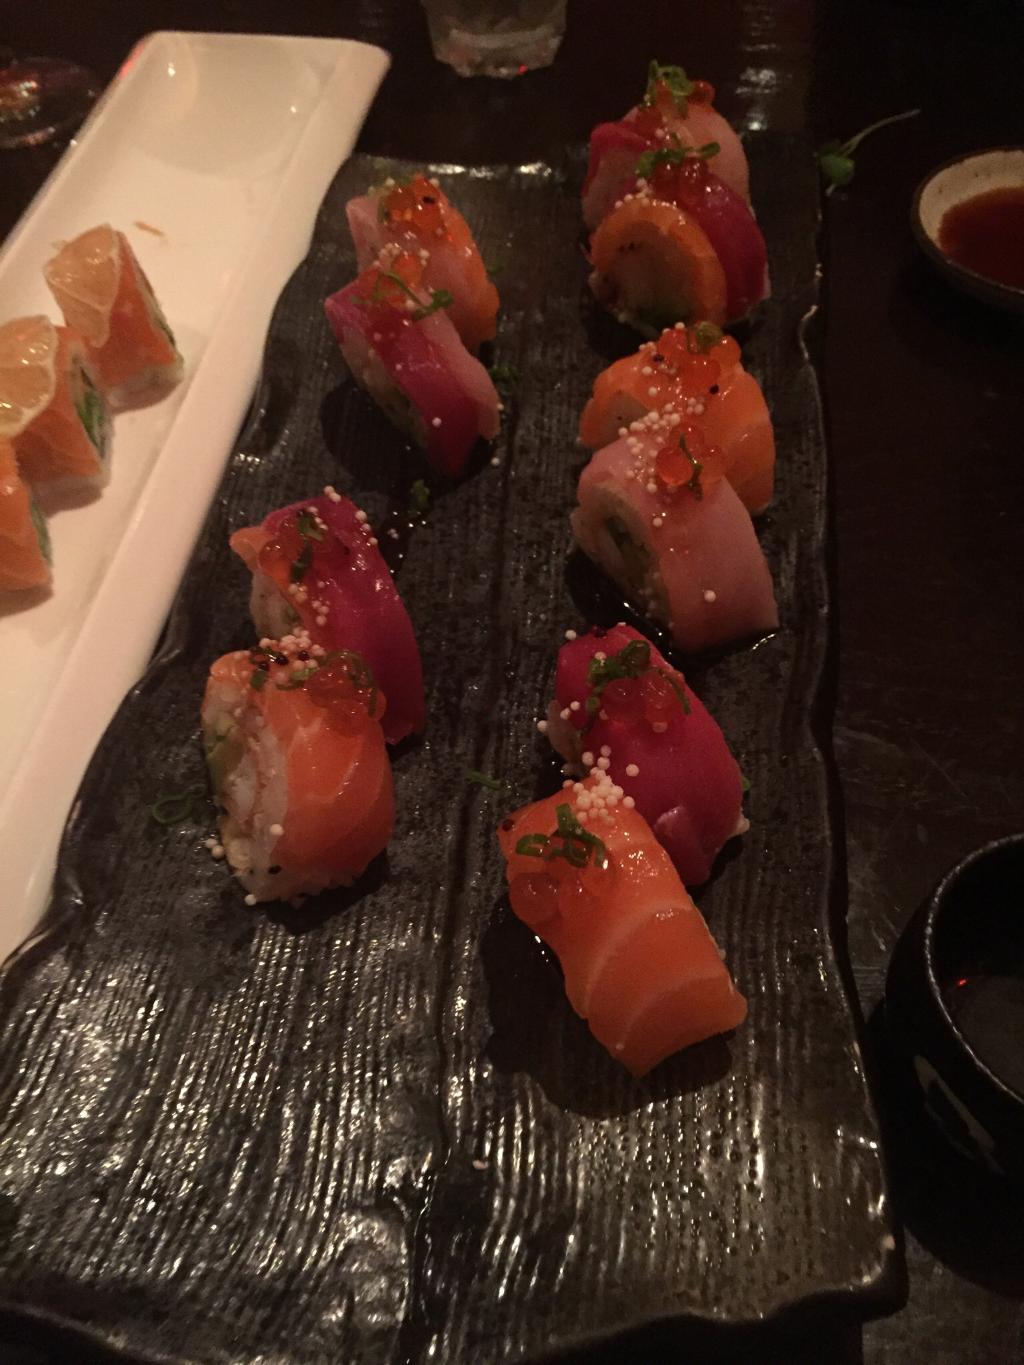 Okoze Sushi